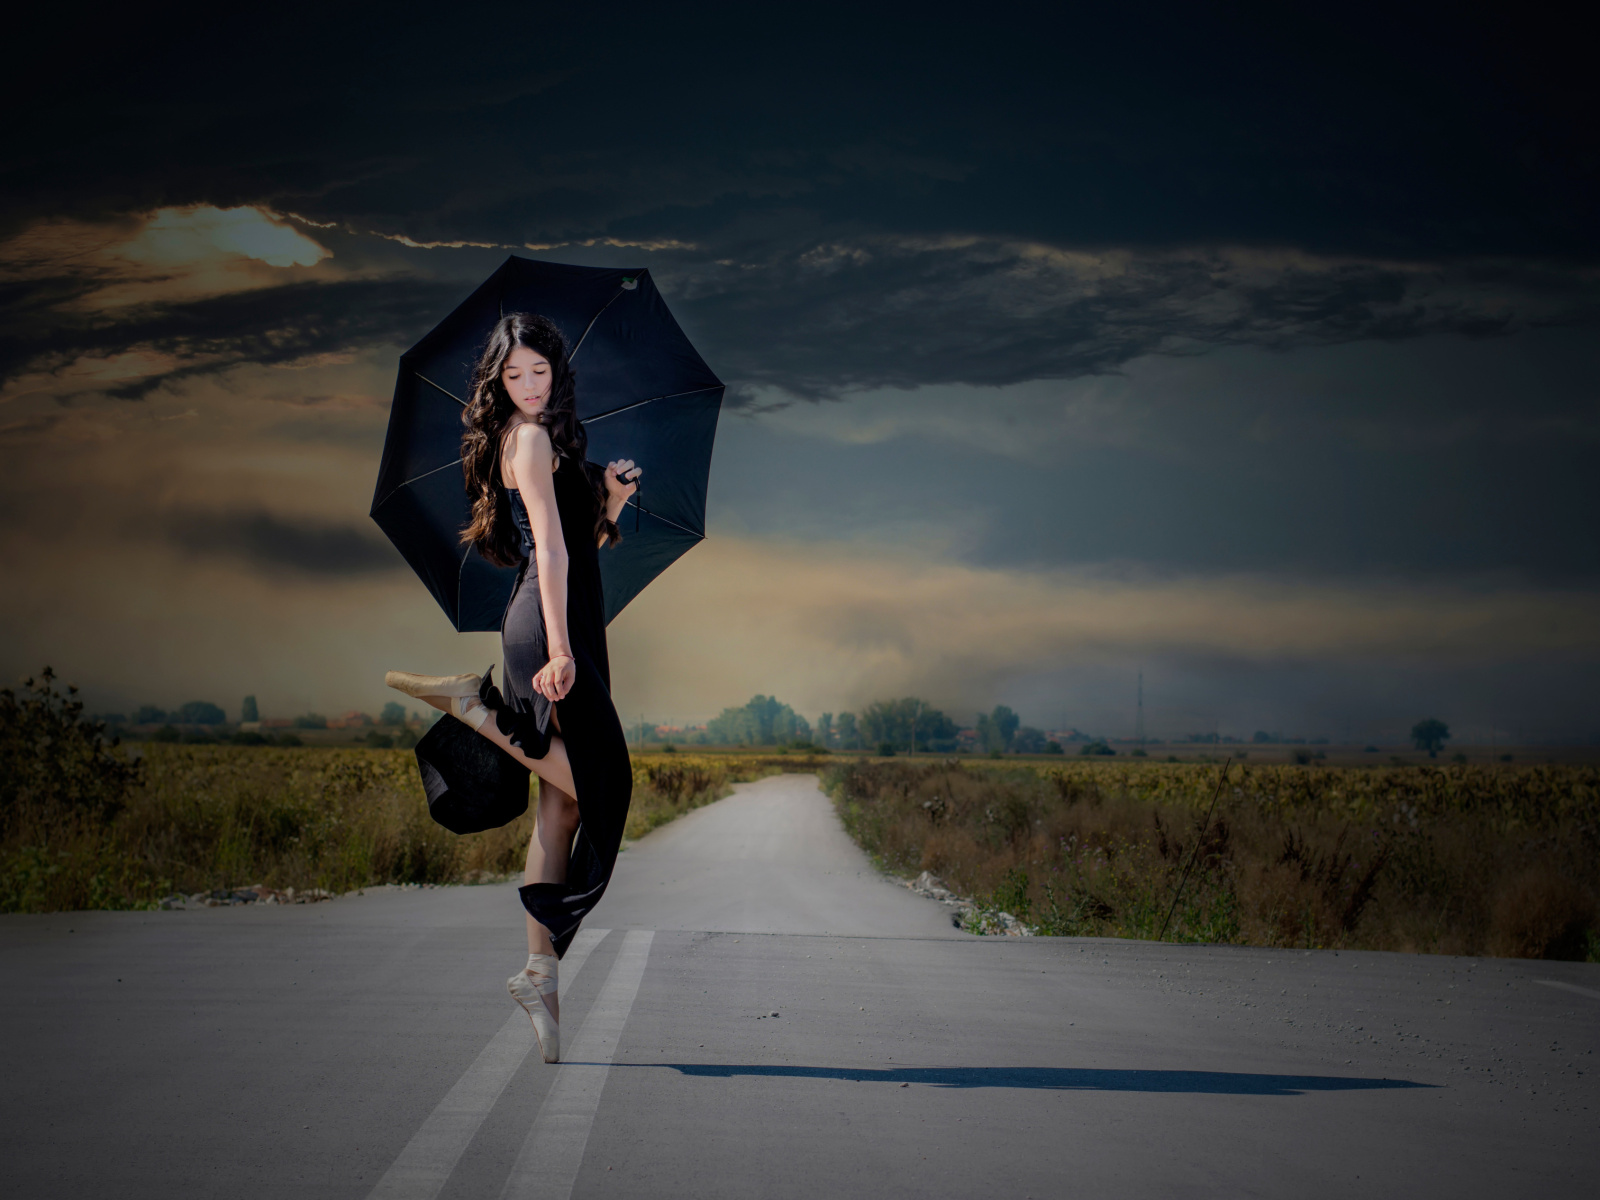 Das Ballerina with black umbrella Wallpaper 1600x1200